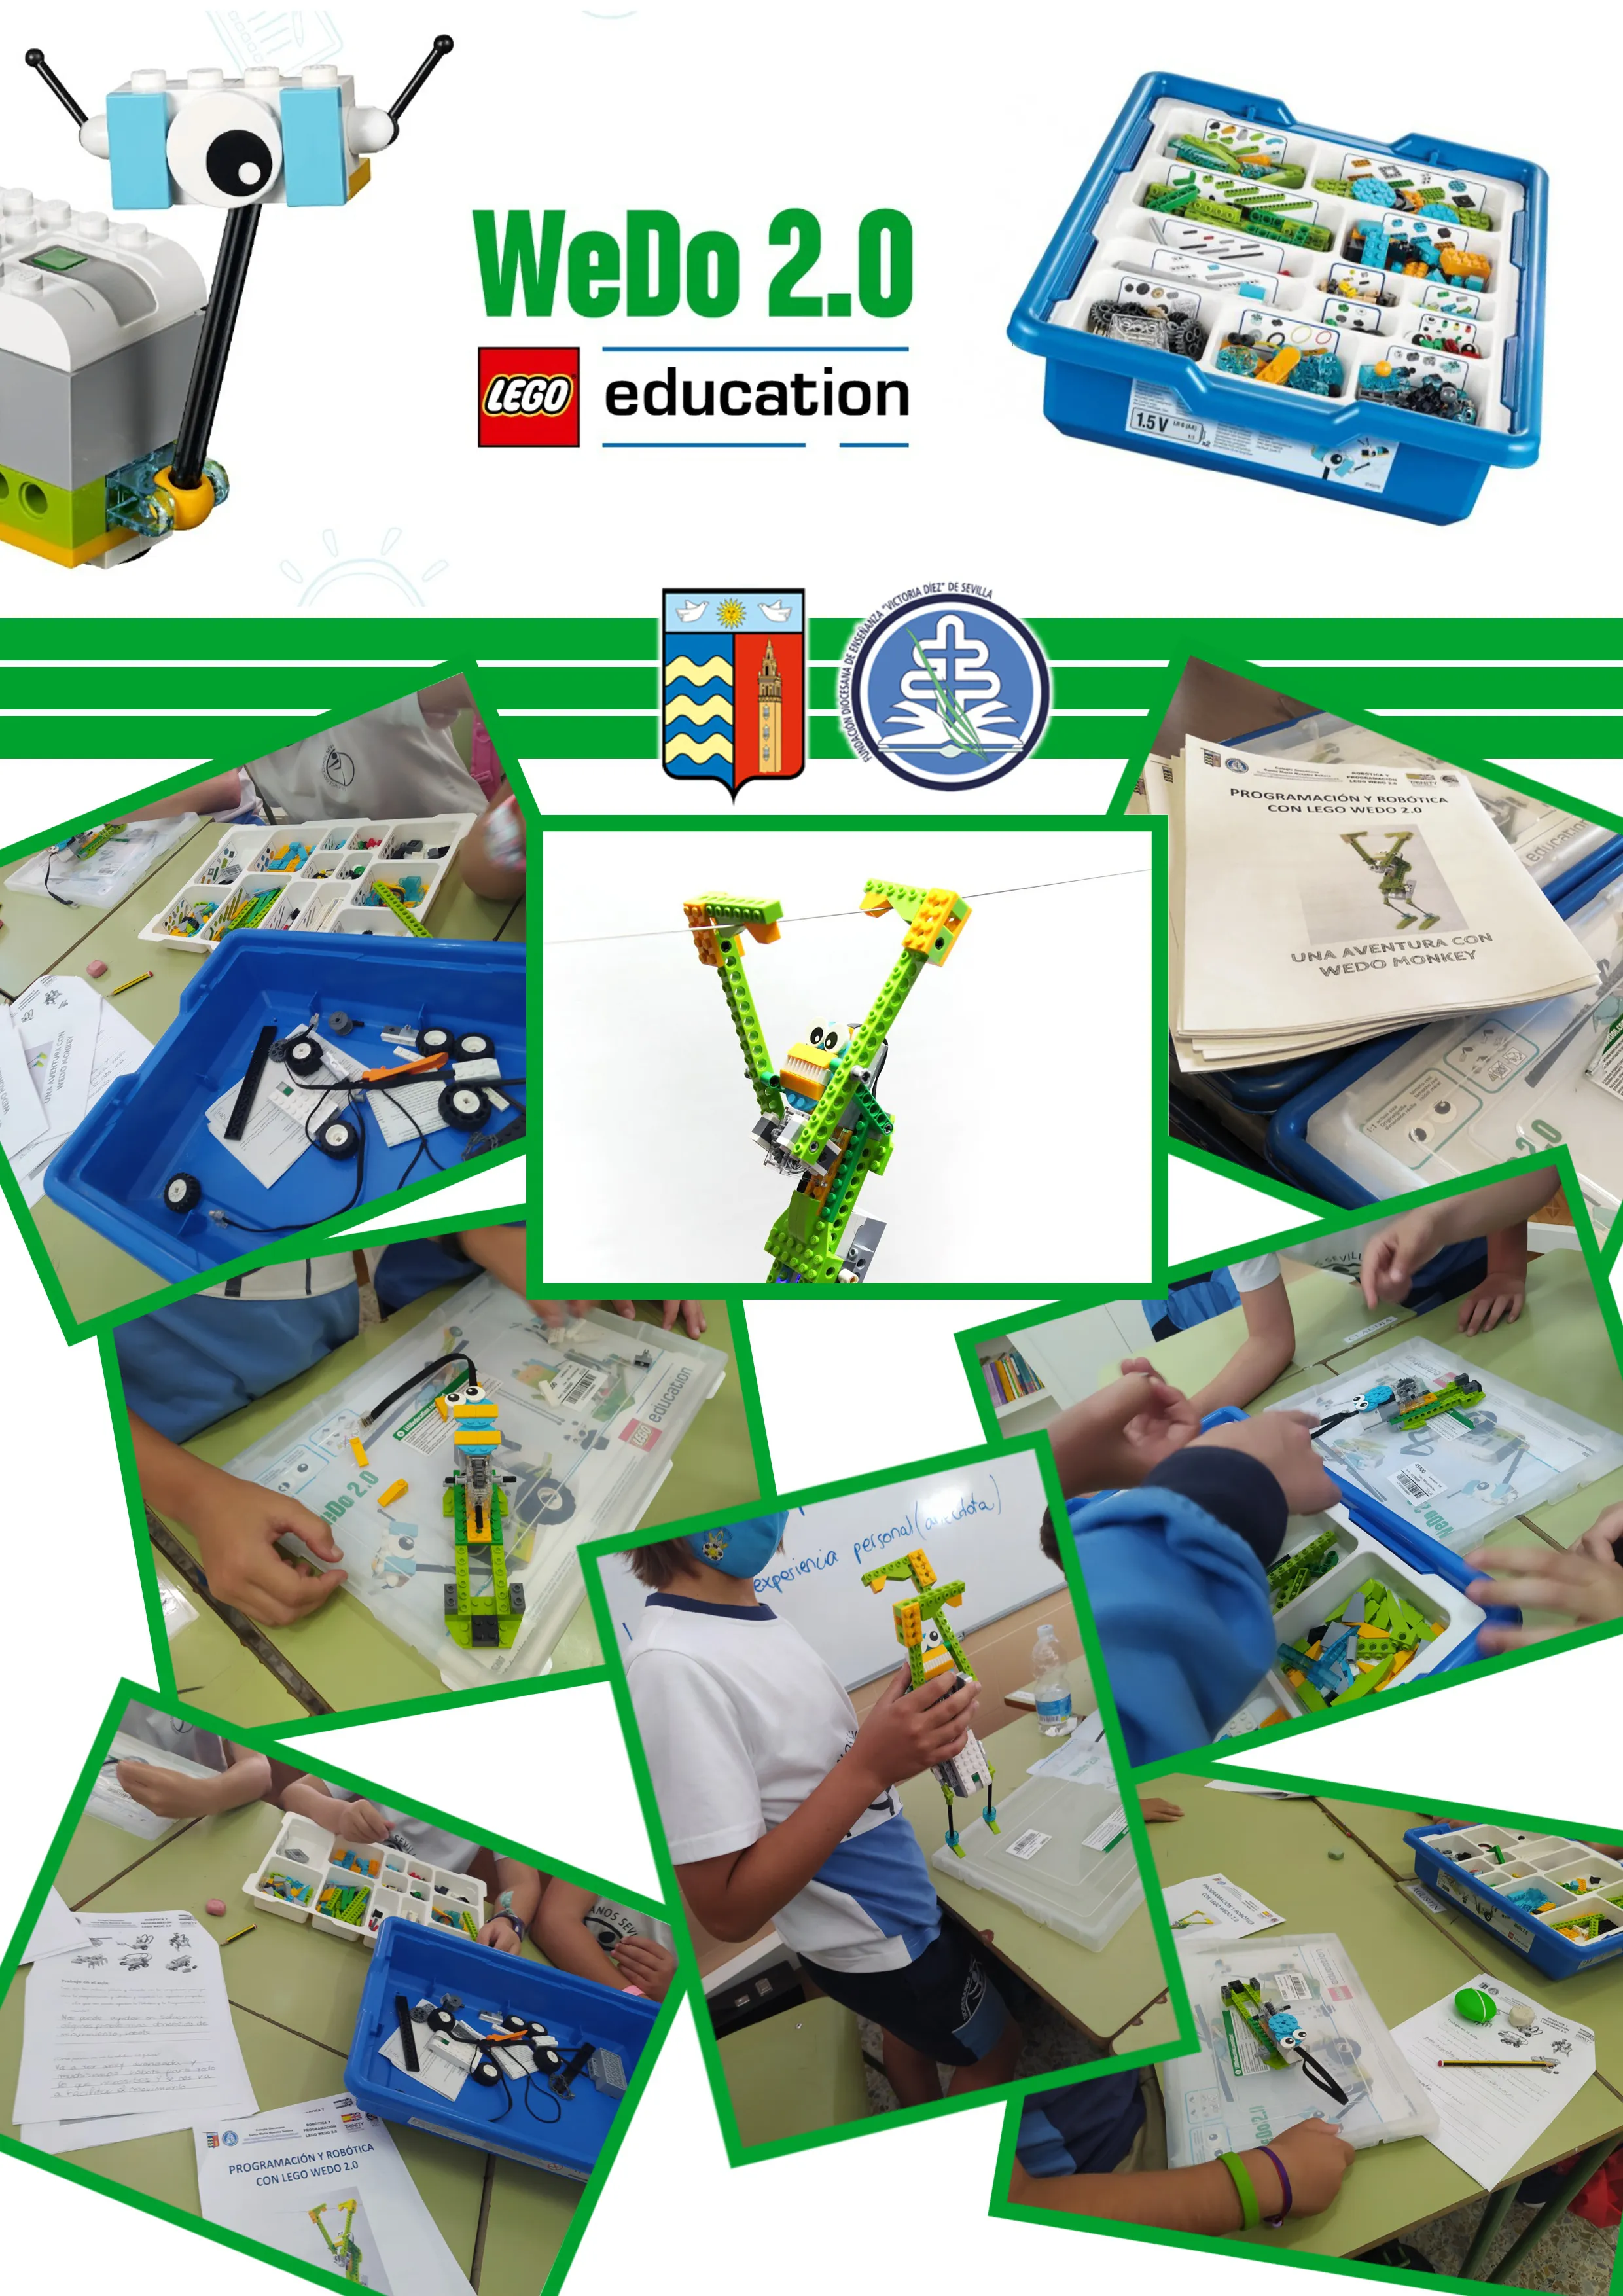 DIGICRAFT - LEGO PROGRAMACIÓN Y ROBÓTICA EDUCATIVA - SCRATCH - Santa María Nuestra Señora